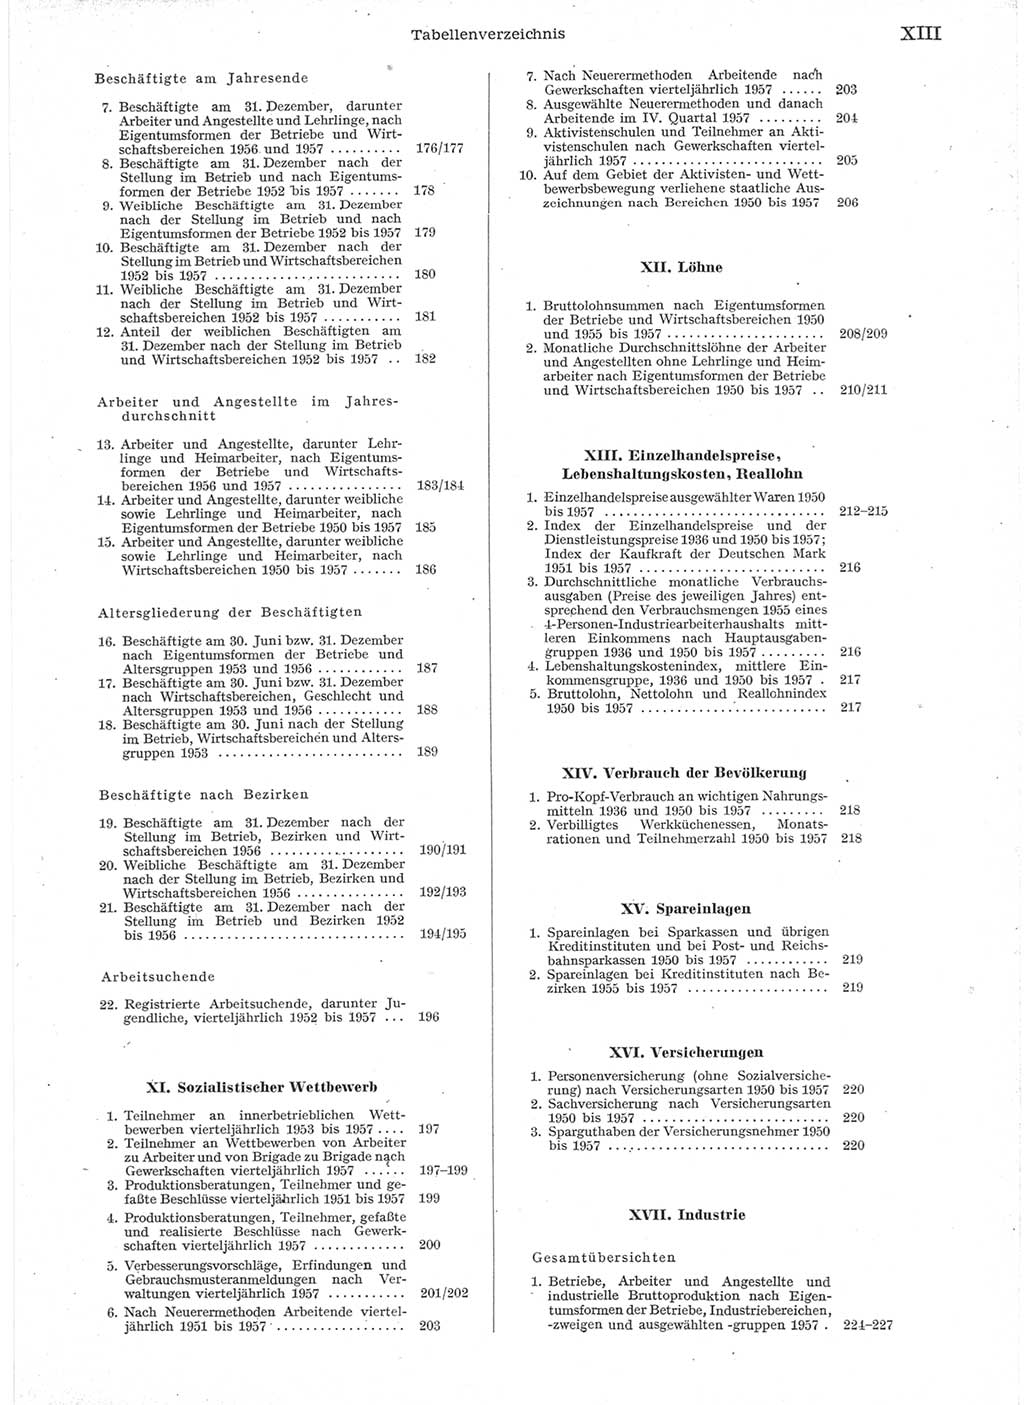 Statistisches Jahrbuch der Deutschen Demokratischen Republik (DDR) 1957, Seite 13 (Stat. Jb. DDR 1957, S. 13)